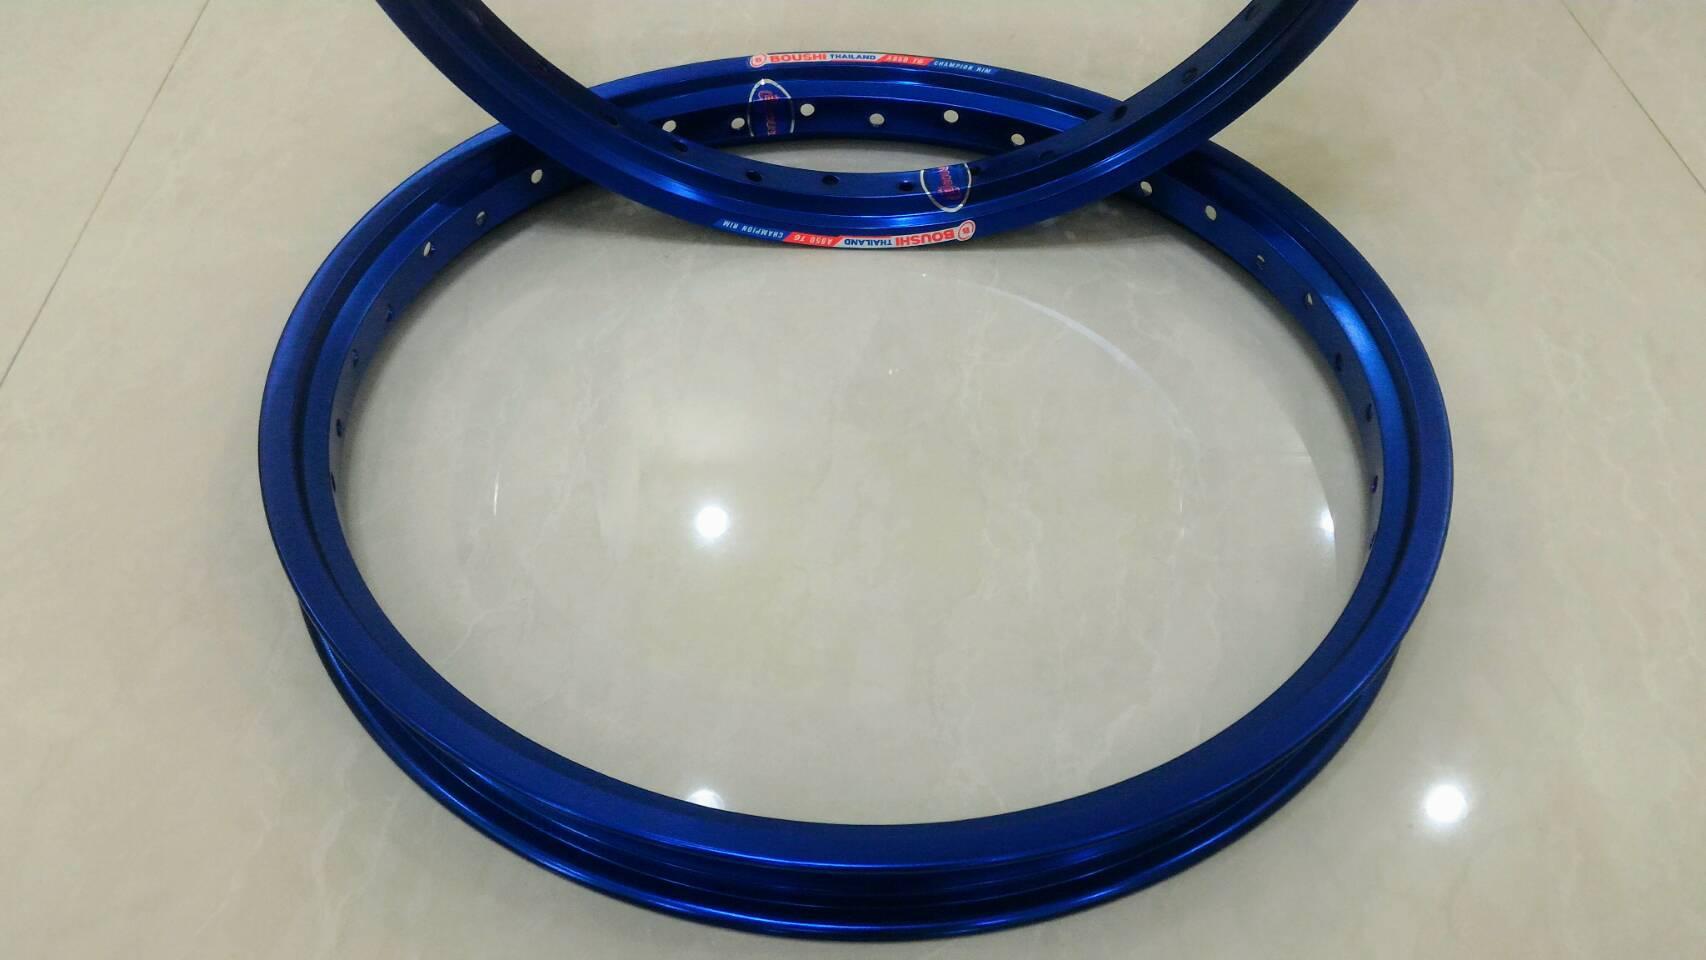 ขอบล้อสีน้ำเงิน(อาร์กอน1คู่) BOUSHI ThaiLand Champion rim สวยทน ขนาดขอบล้อ 1.40x17 ใส่กับรถมอเตอร์ไซค์ได้ทุกรุ่น(ส่งฟรีจ้า)